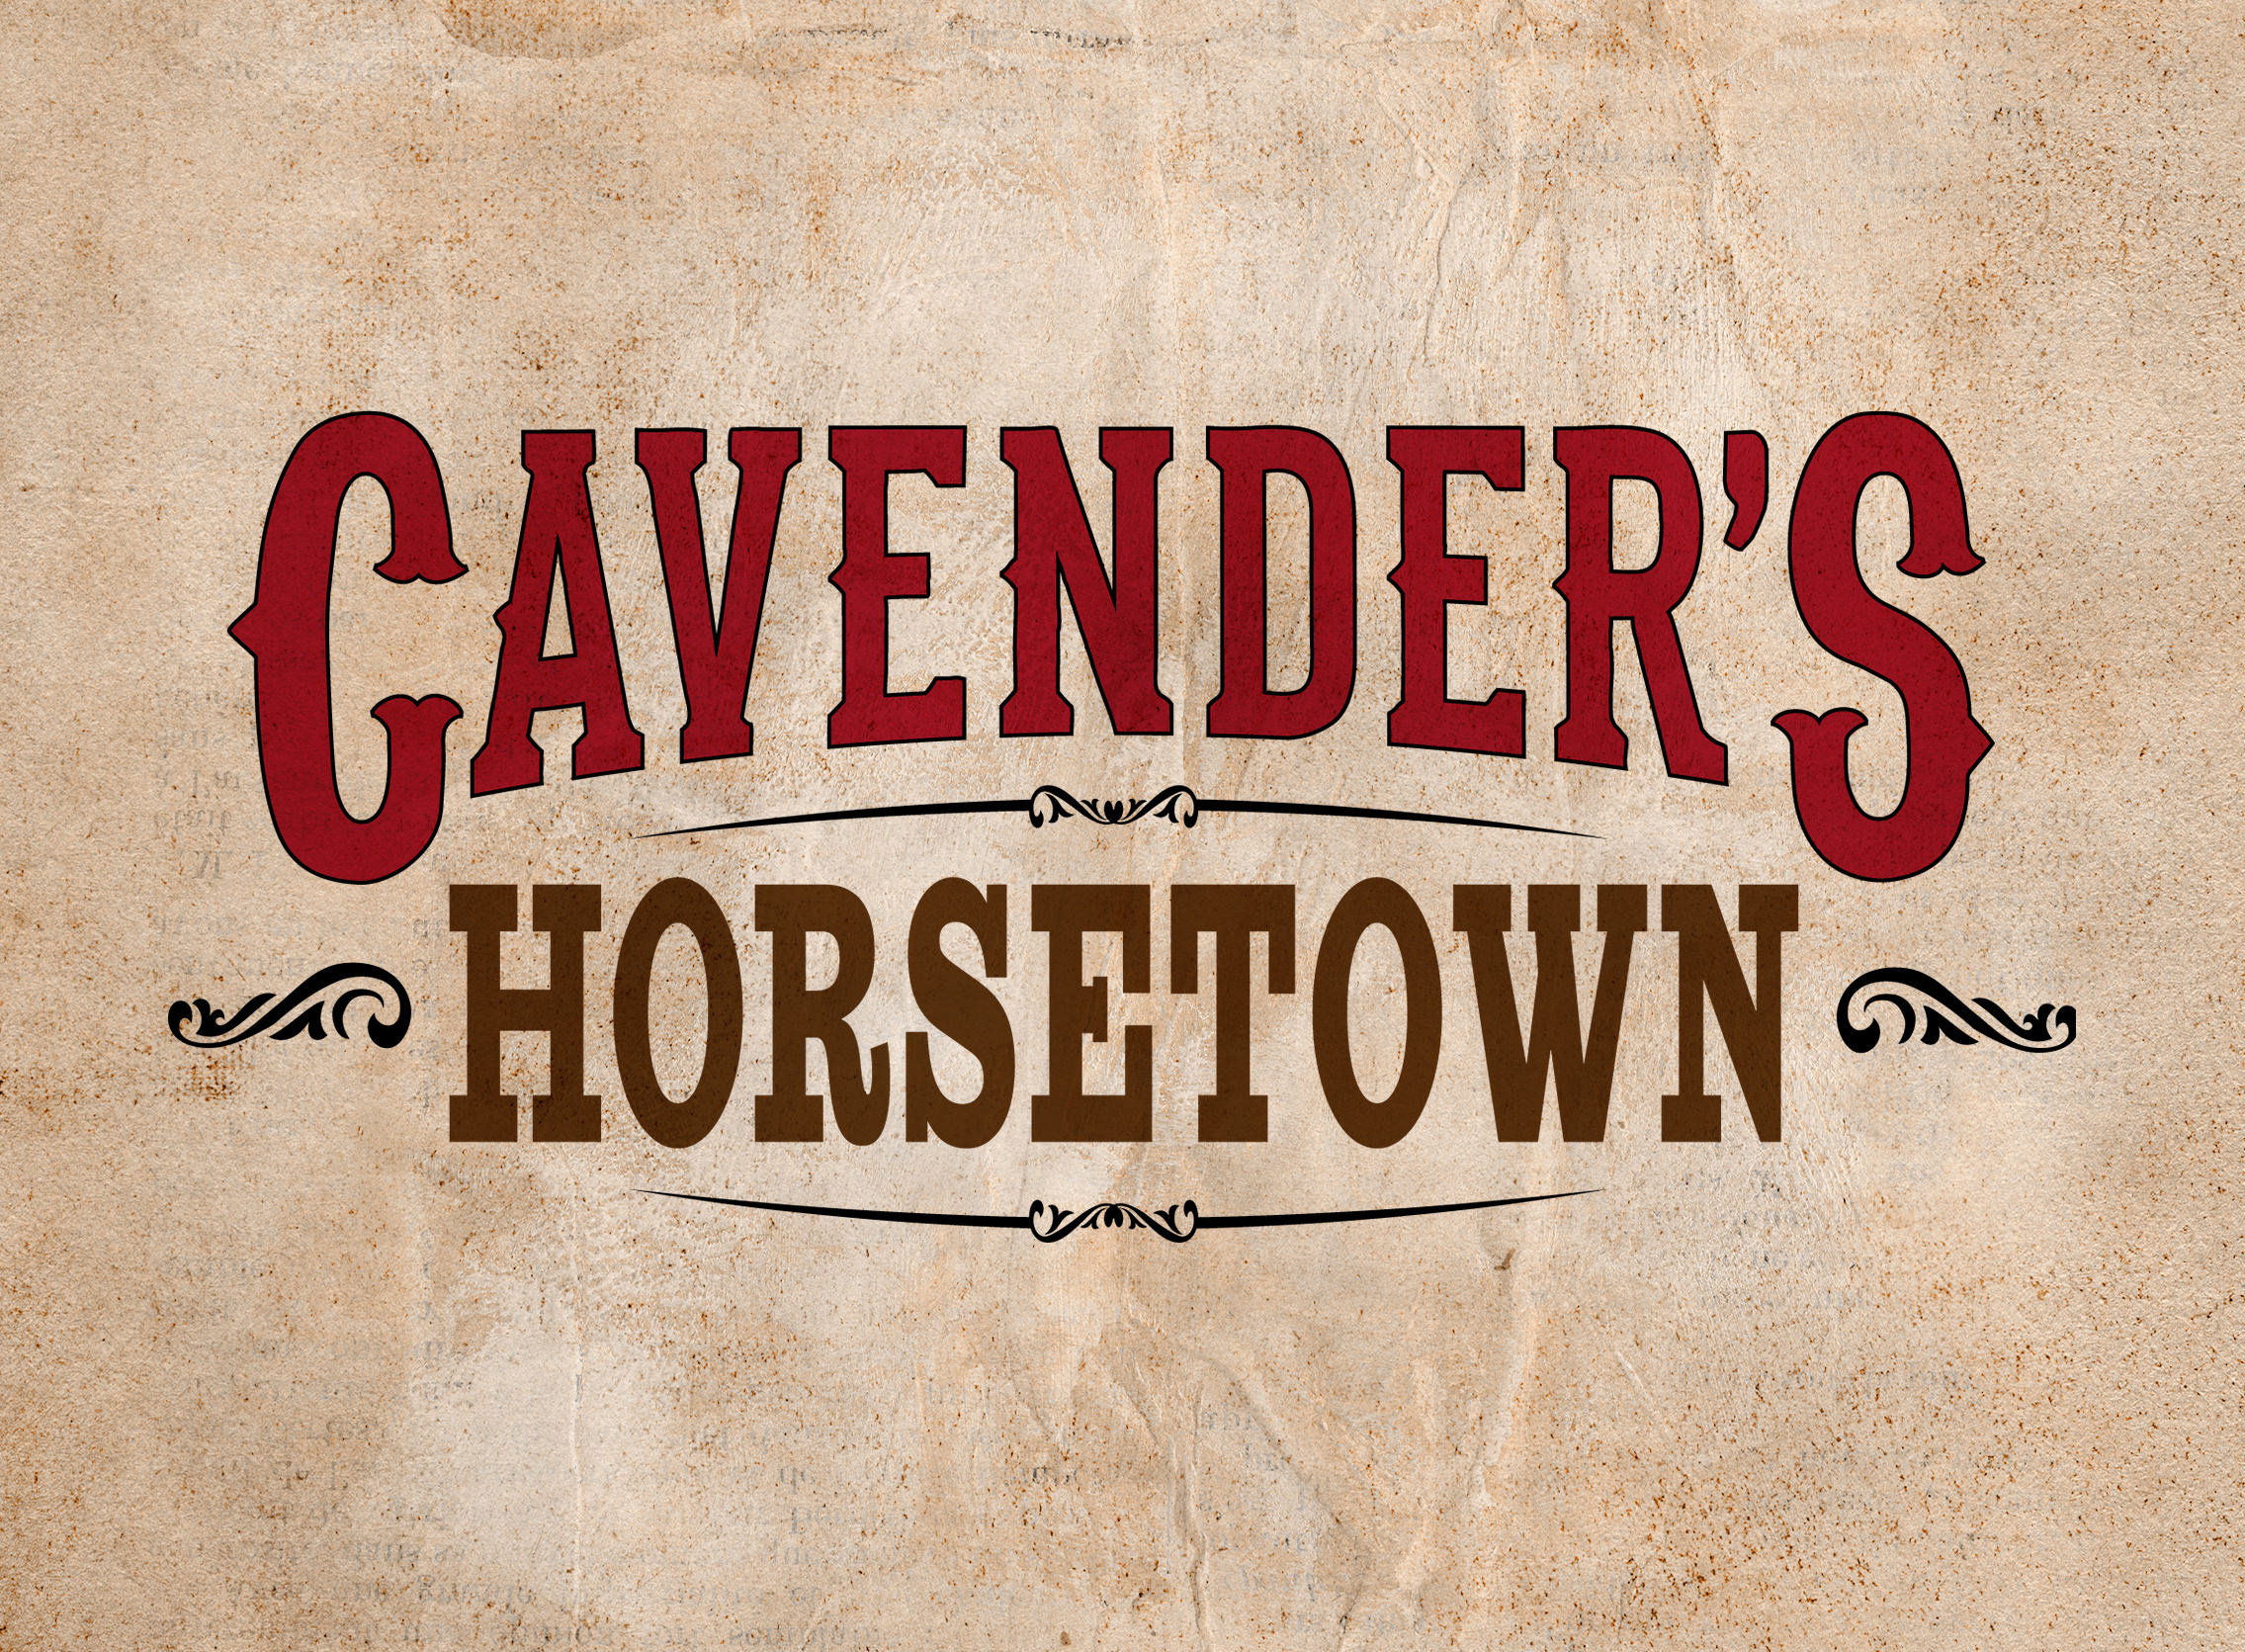 Cavender's Horsetown West